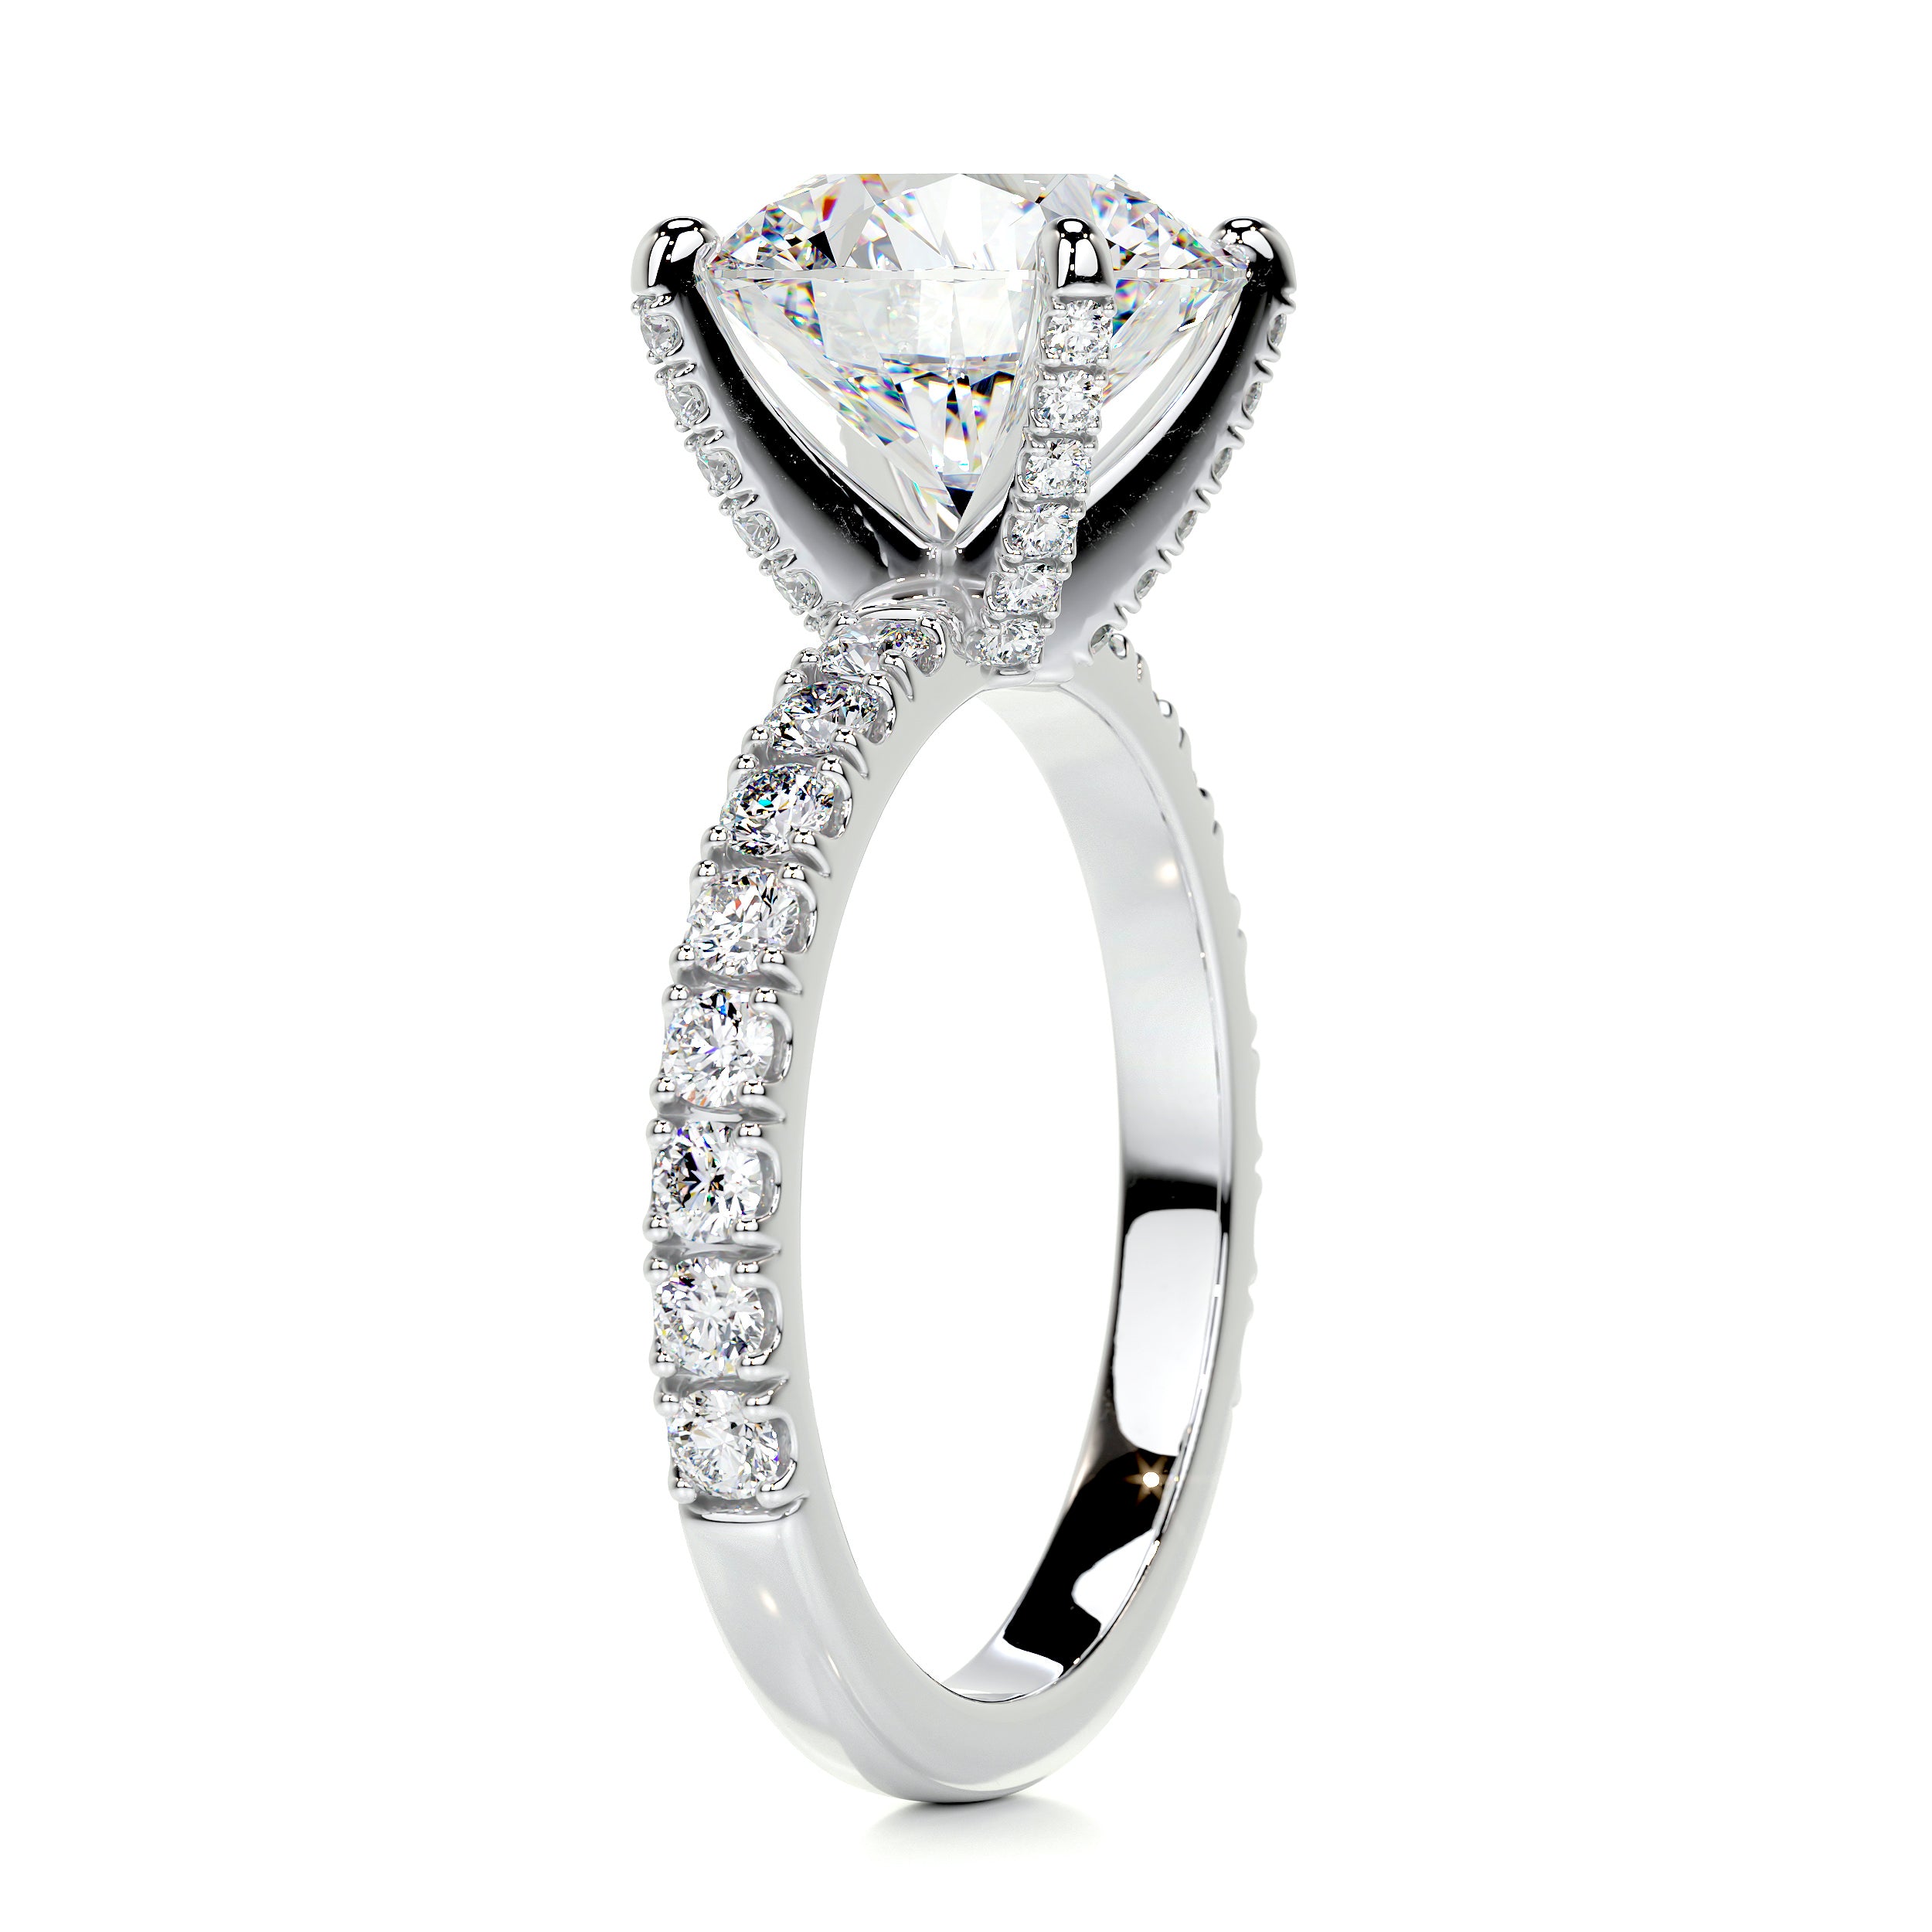 Alison Moissanite & Diamonds Ring   (3.75 Carat) -Platinum